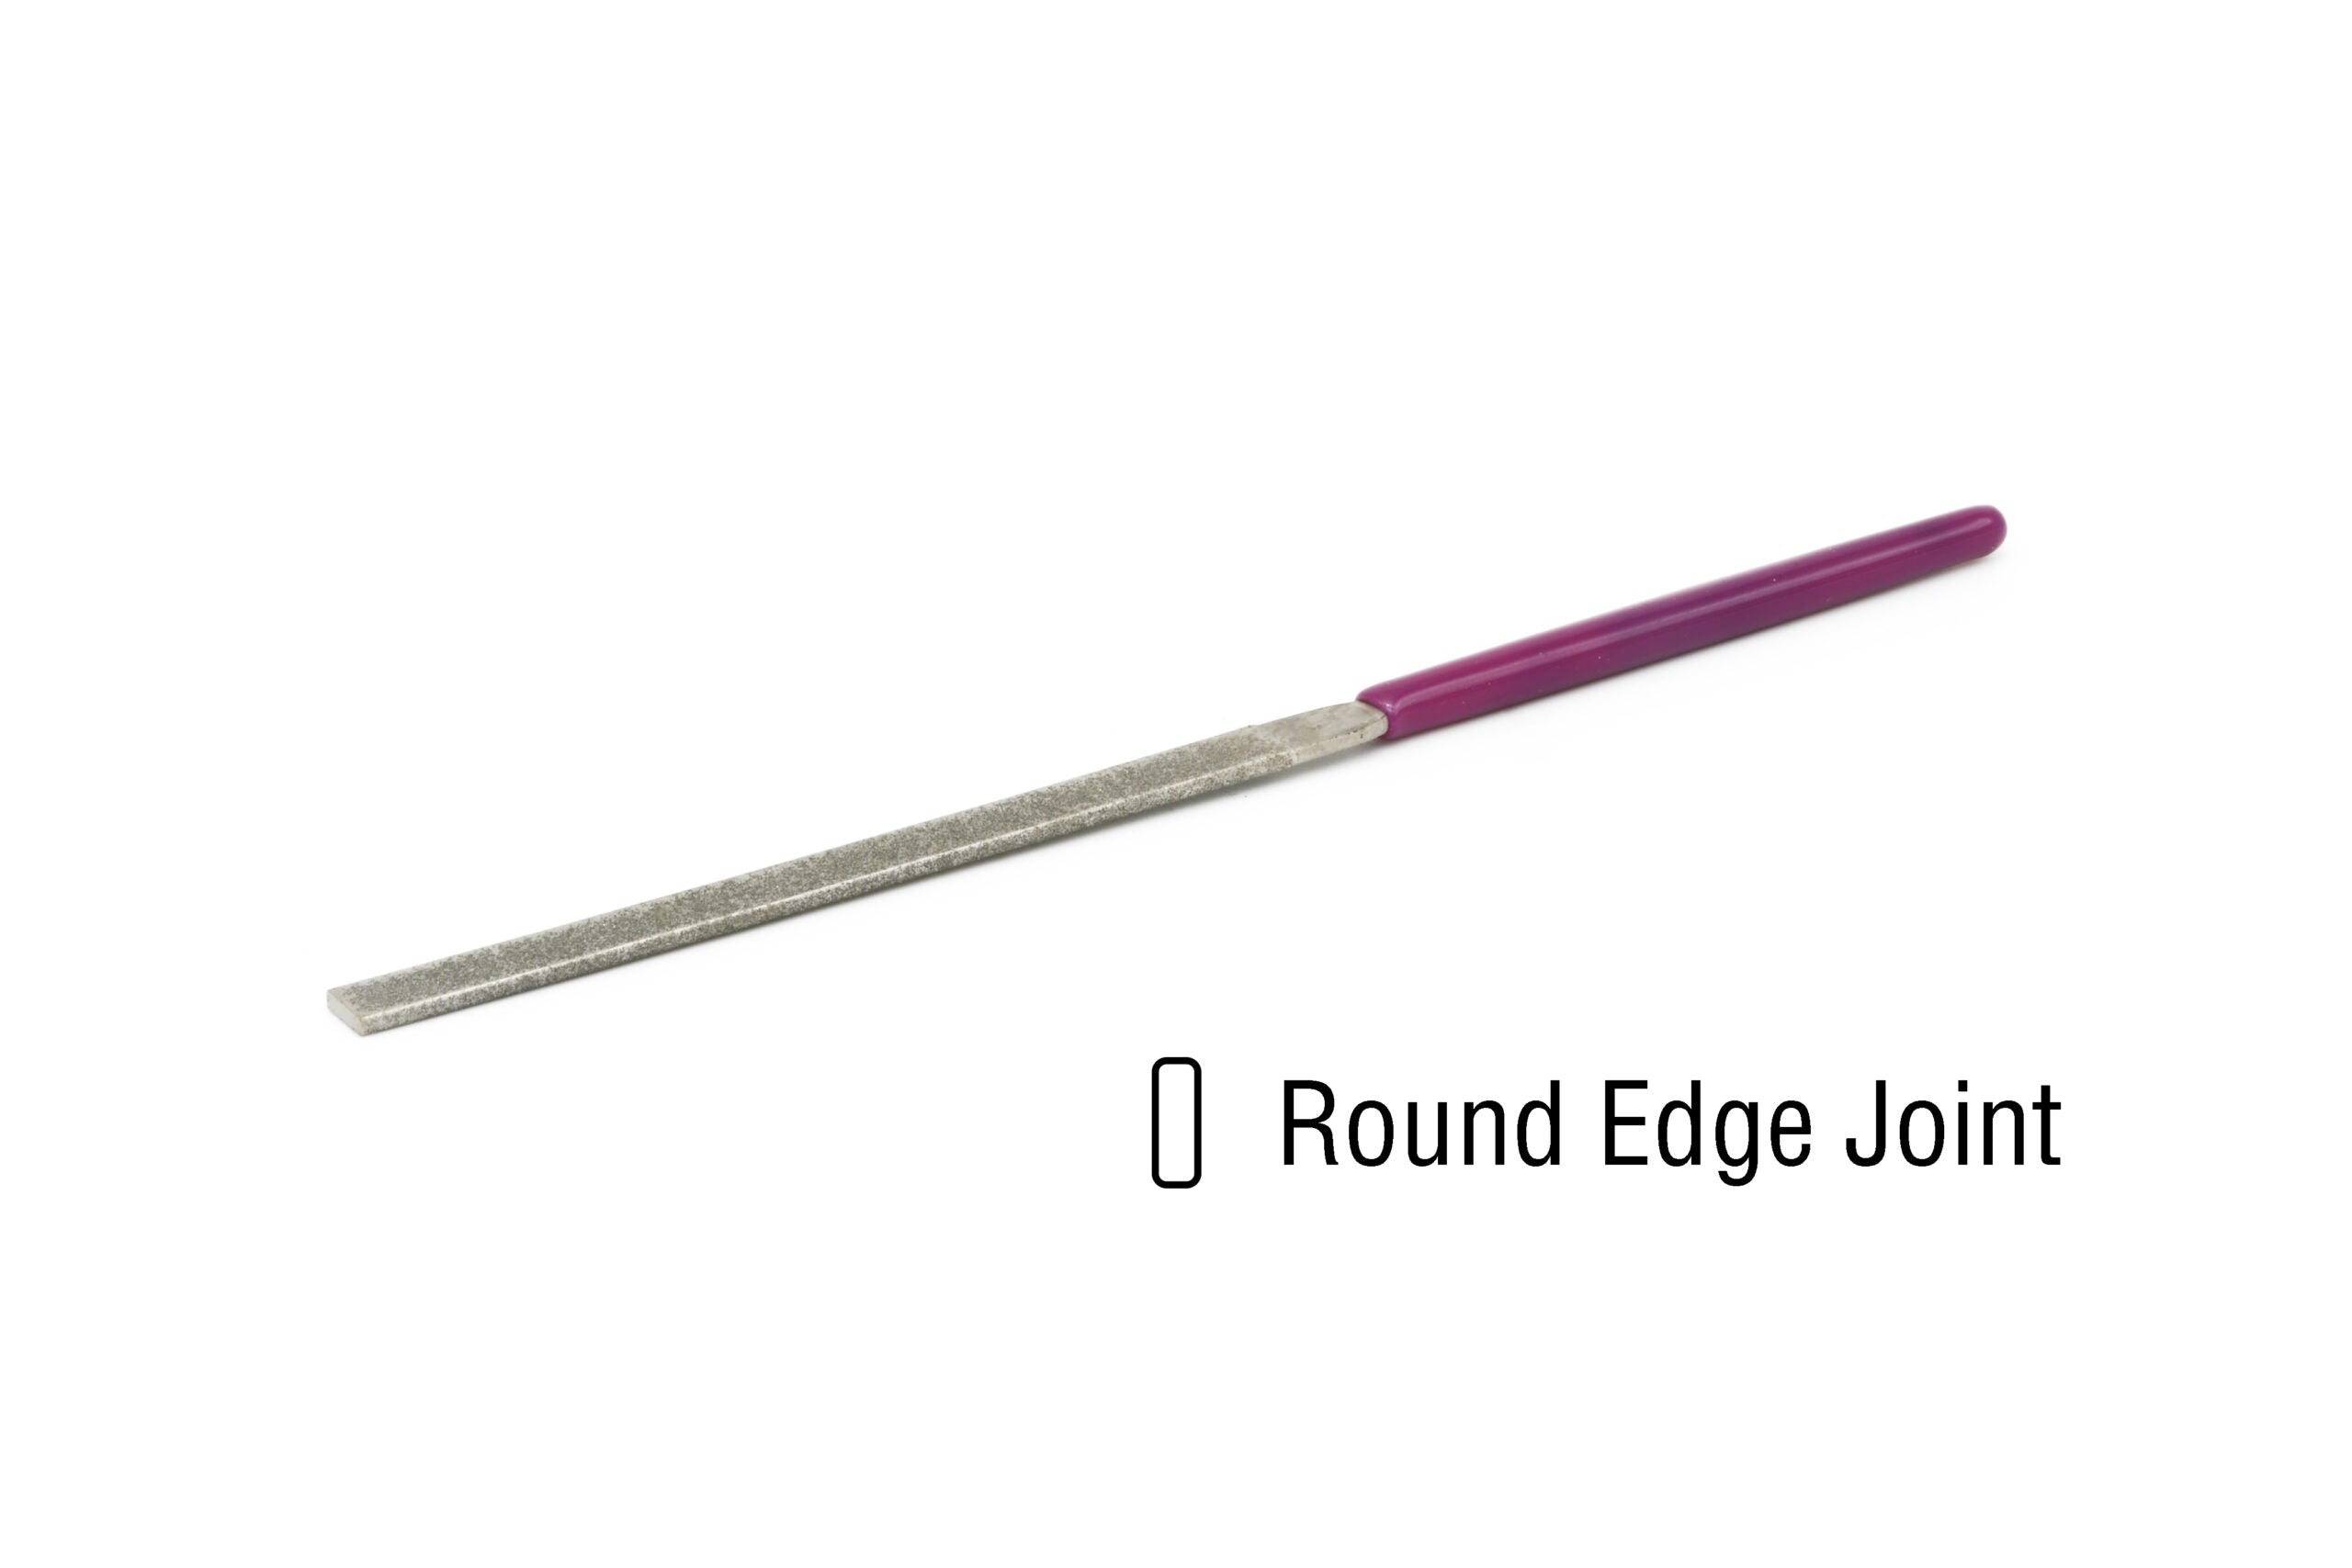 EZE-LAP Needle File Round Edge Joint Coarse